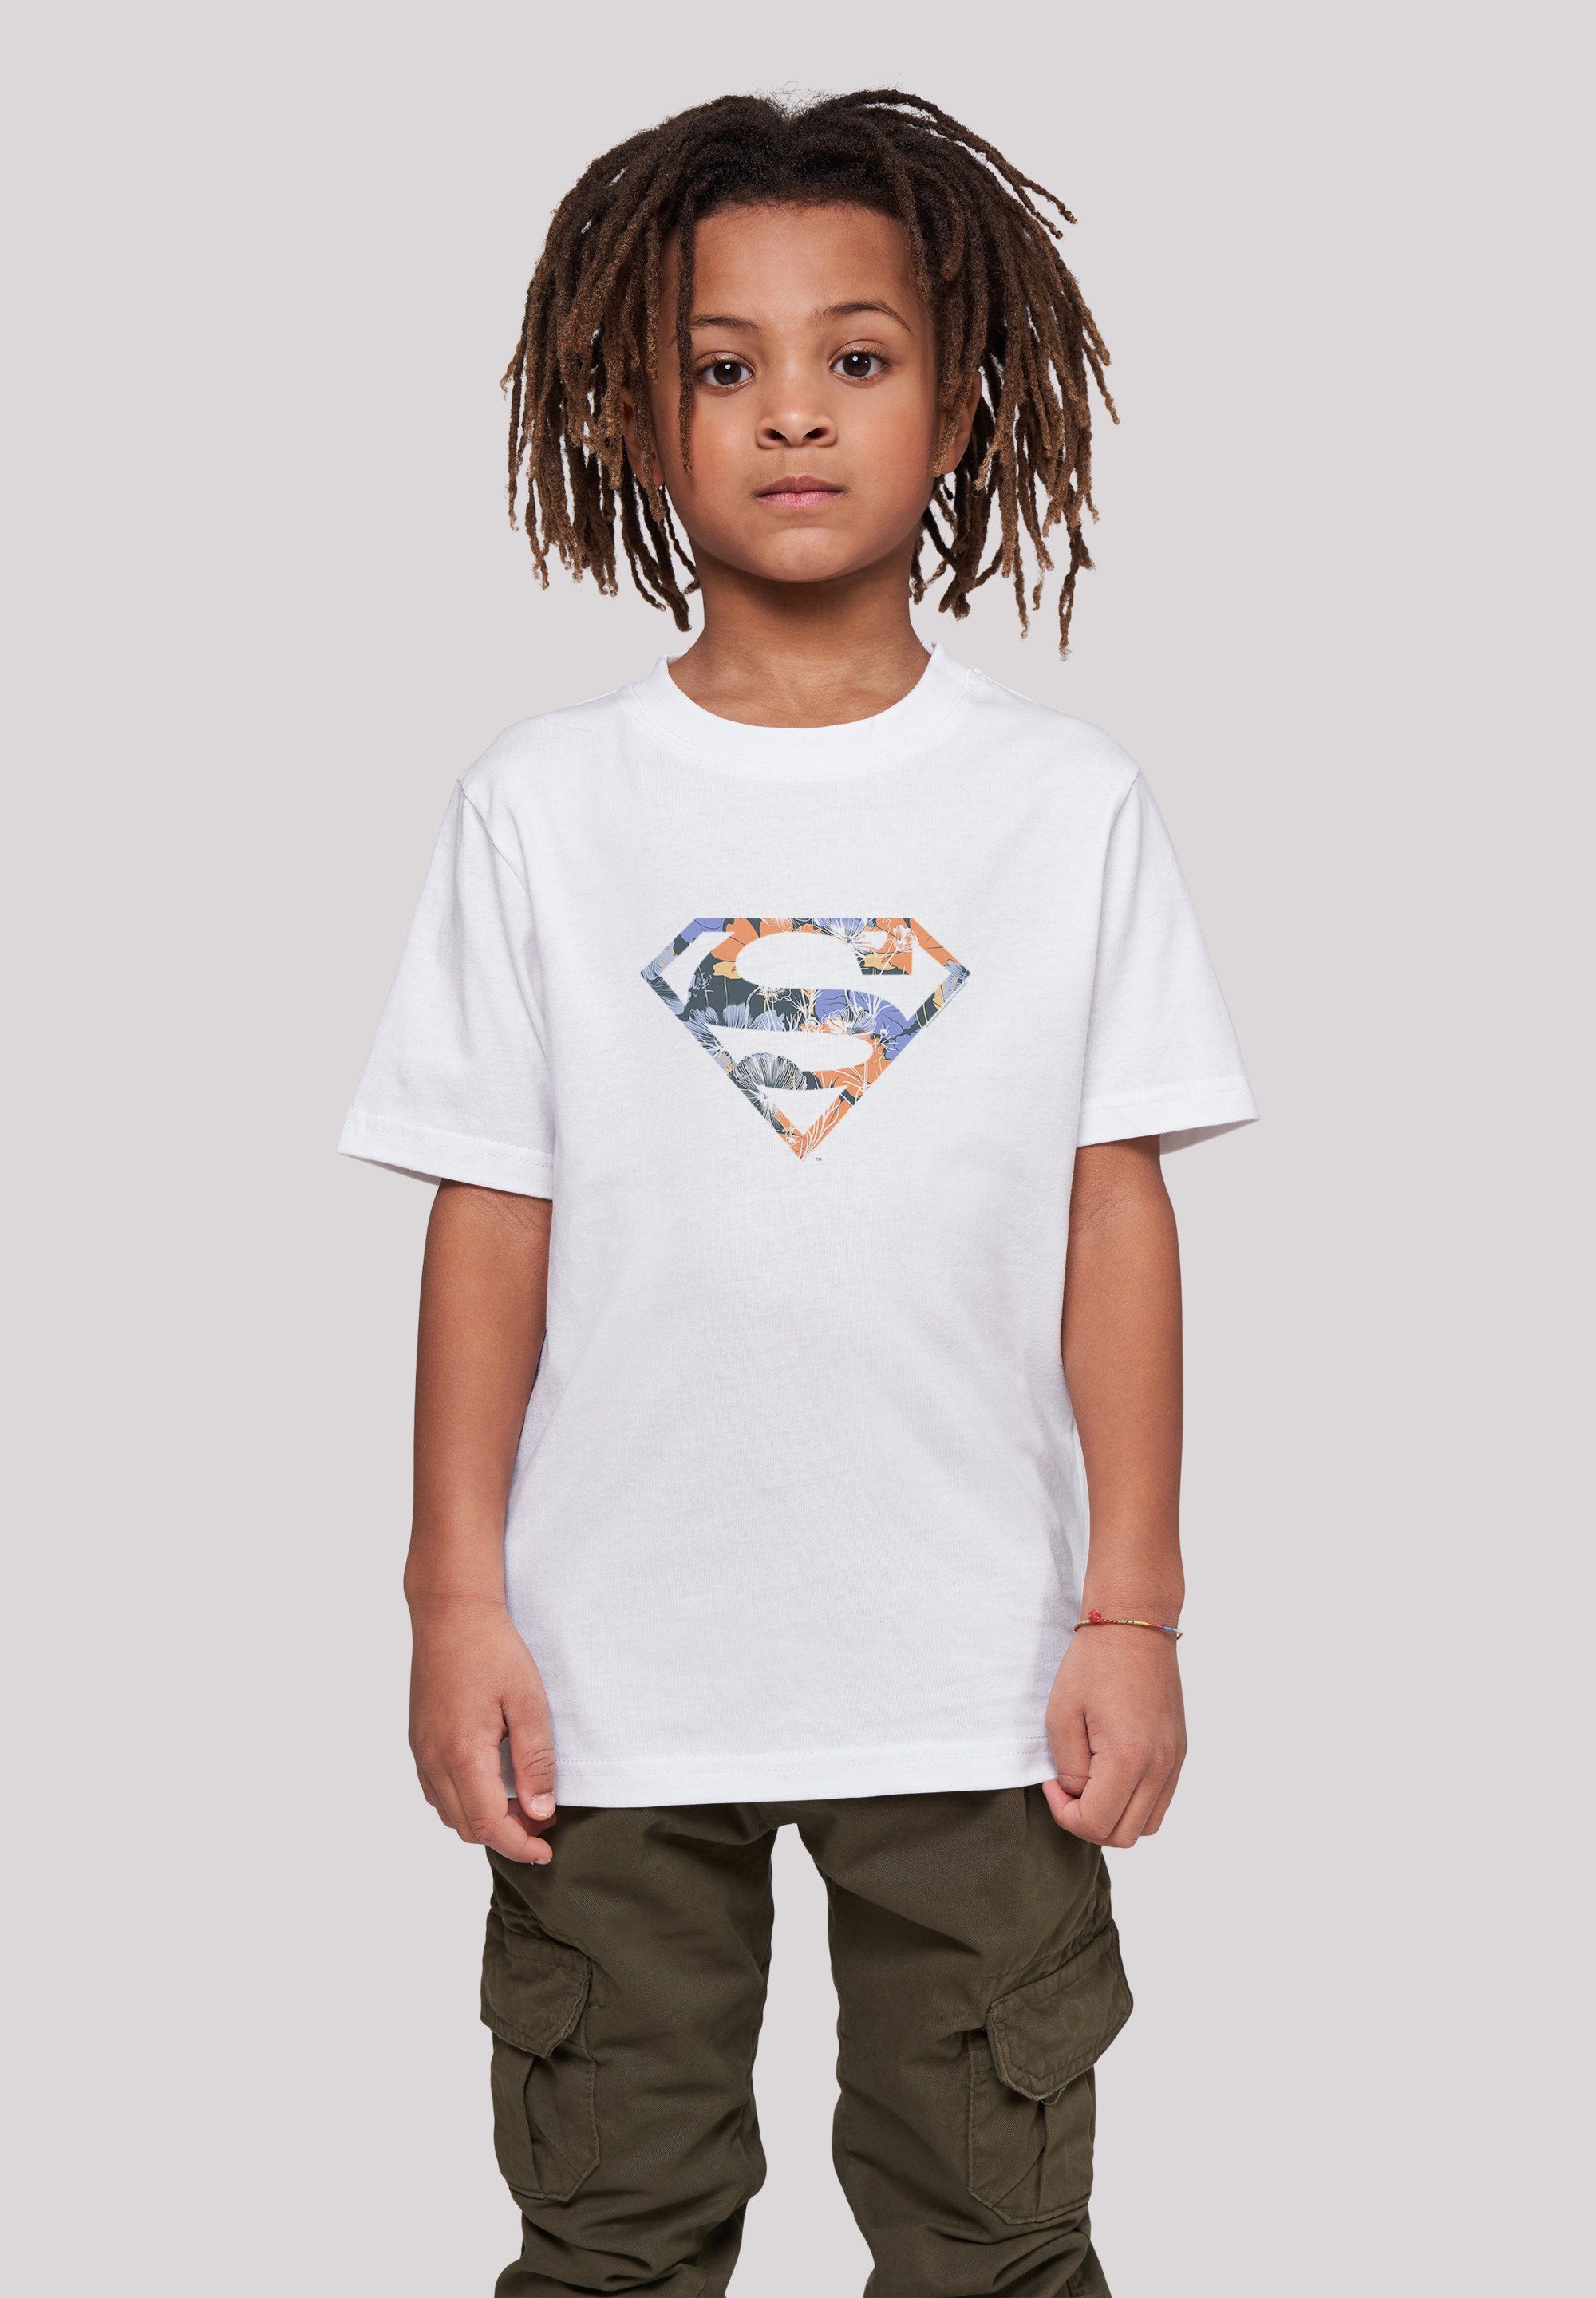 F4NT4STIC T-Shirt T-Shirt DC Comics Superheld Superman Merch,Jungen,Mädchen,Bedruckt Unisex Floral Kinder,Premium Logo